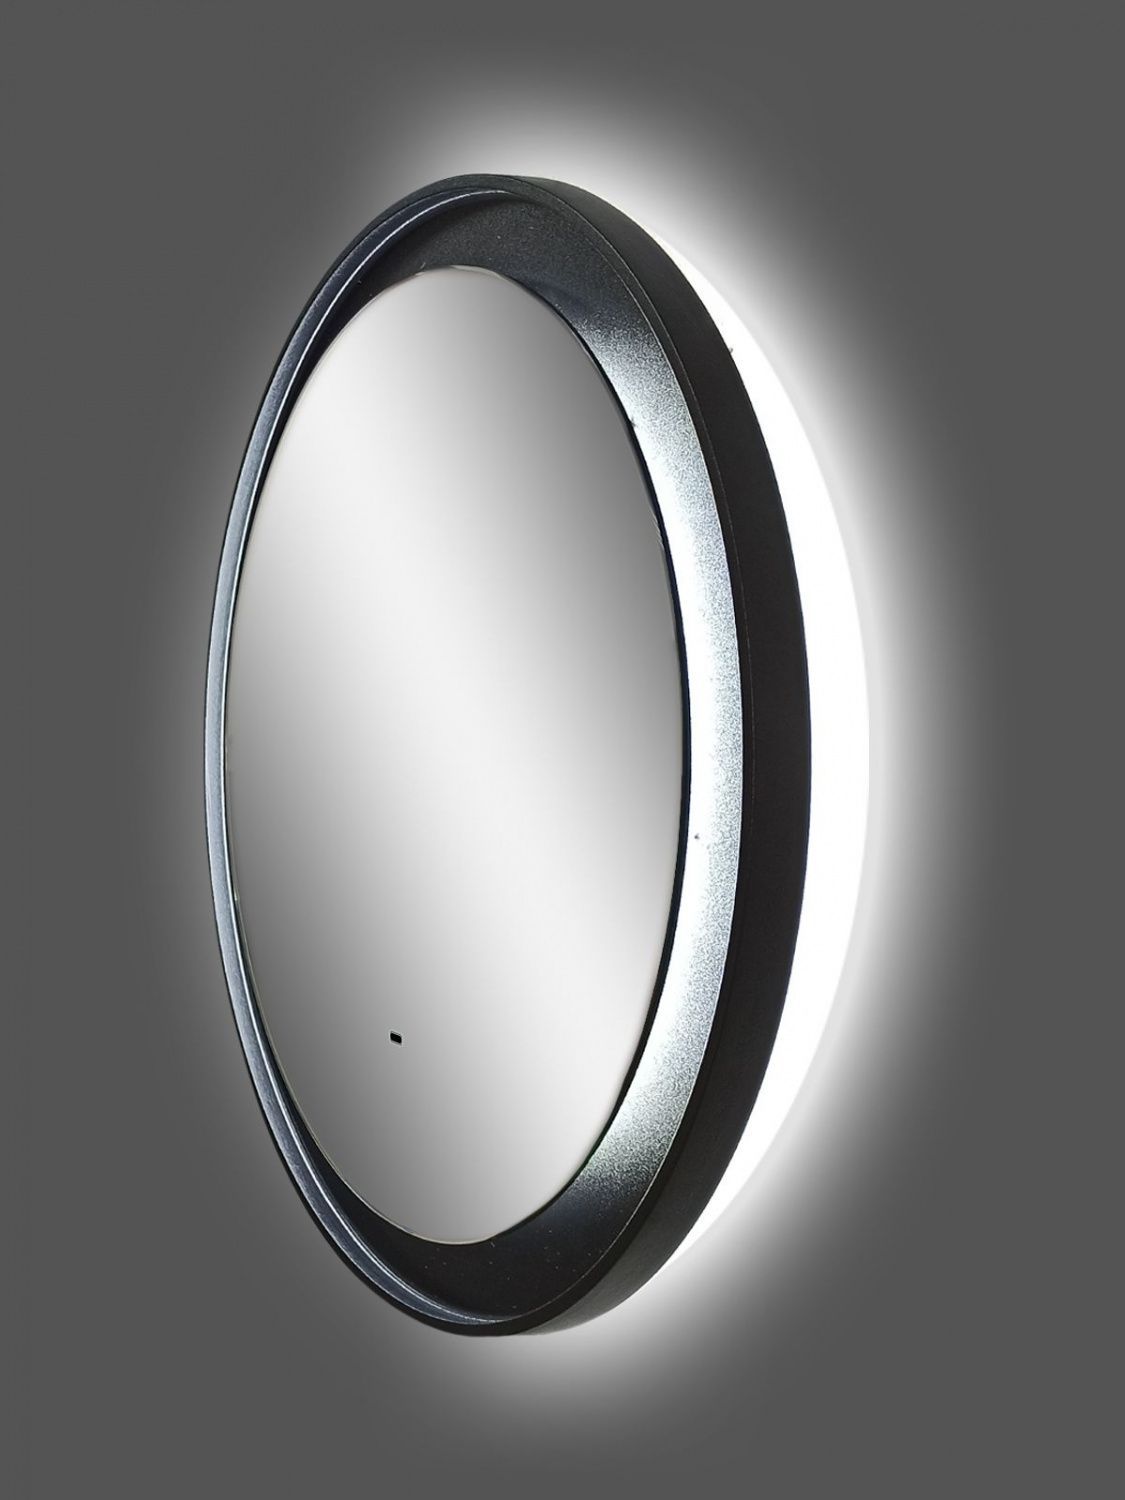 Зеркало Art&Max Napoli AM-Nap-600-DS-F 60x60 см, с подсветкой, черный